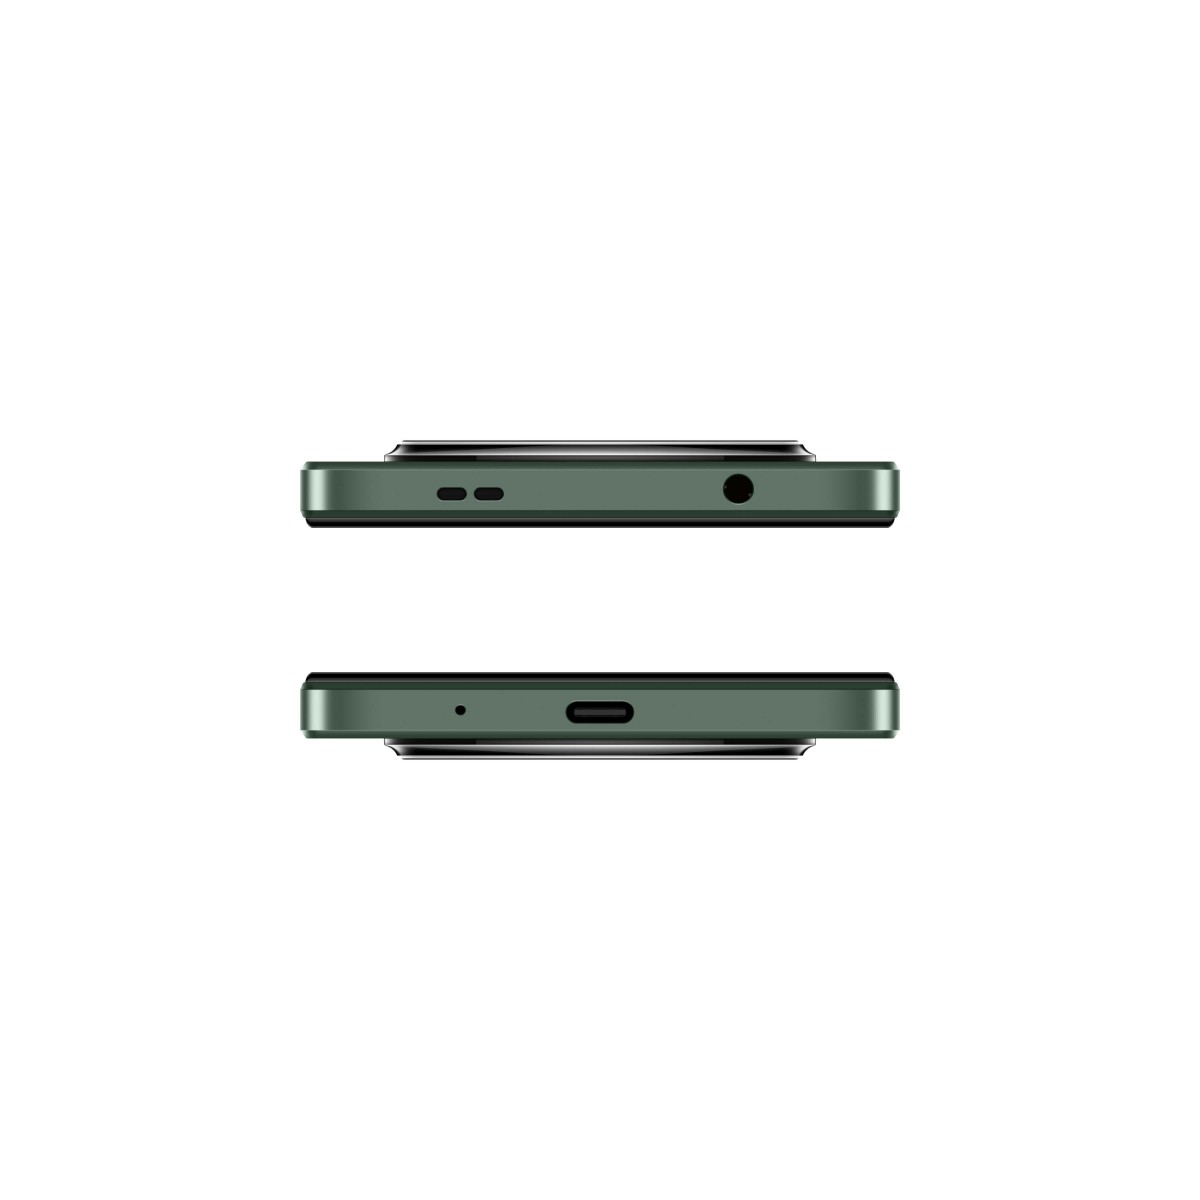 جوال شاومي ريدمي A3 ثنائي الشريحة ذاكرة 64 جيجا مع رام 3 جيجا 4G - لون أخضر